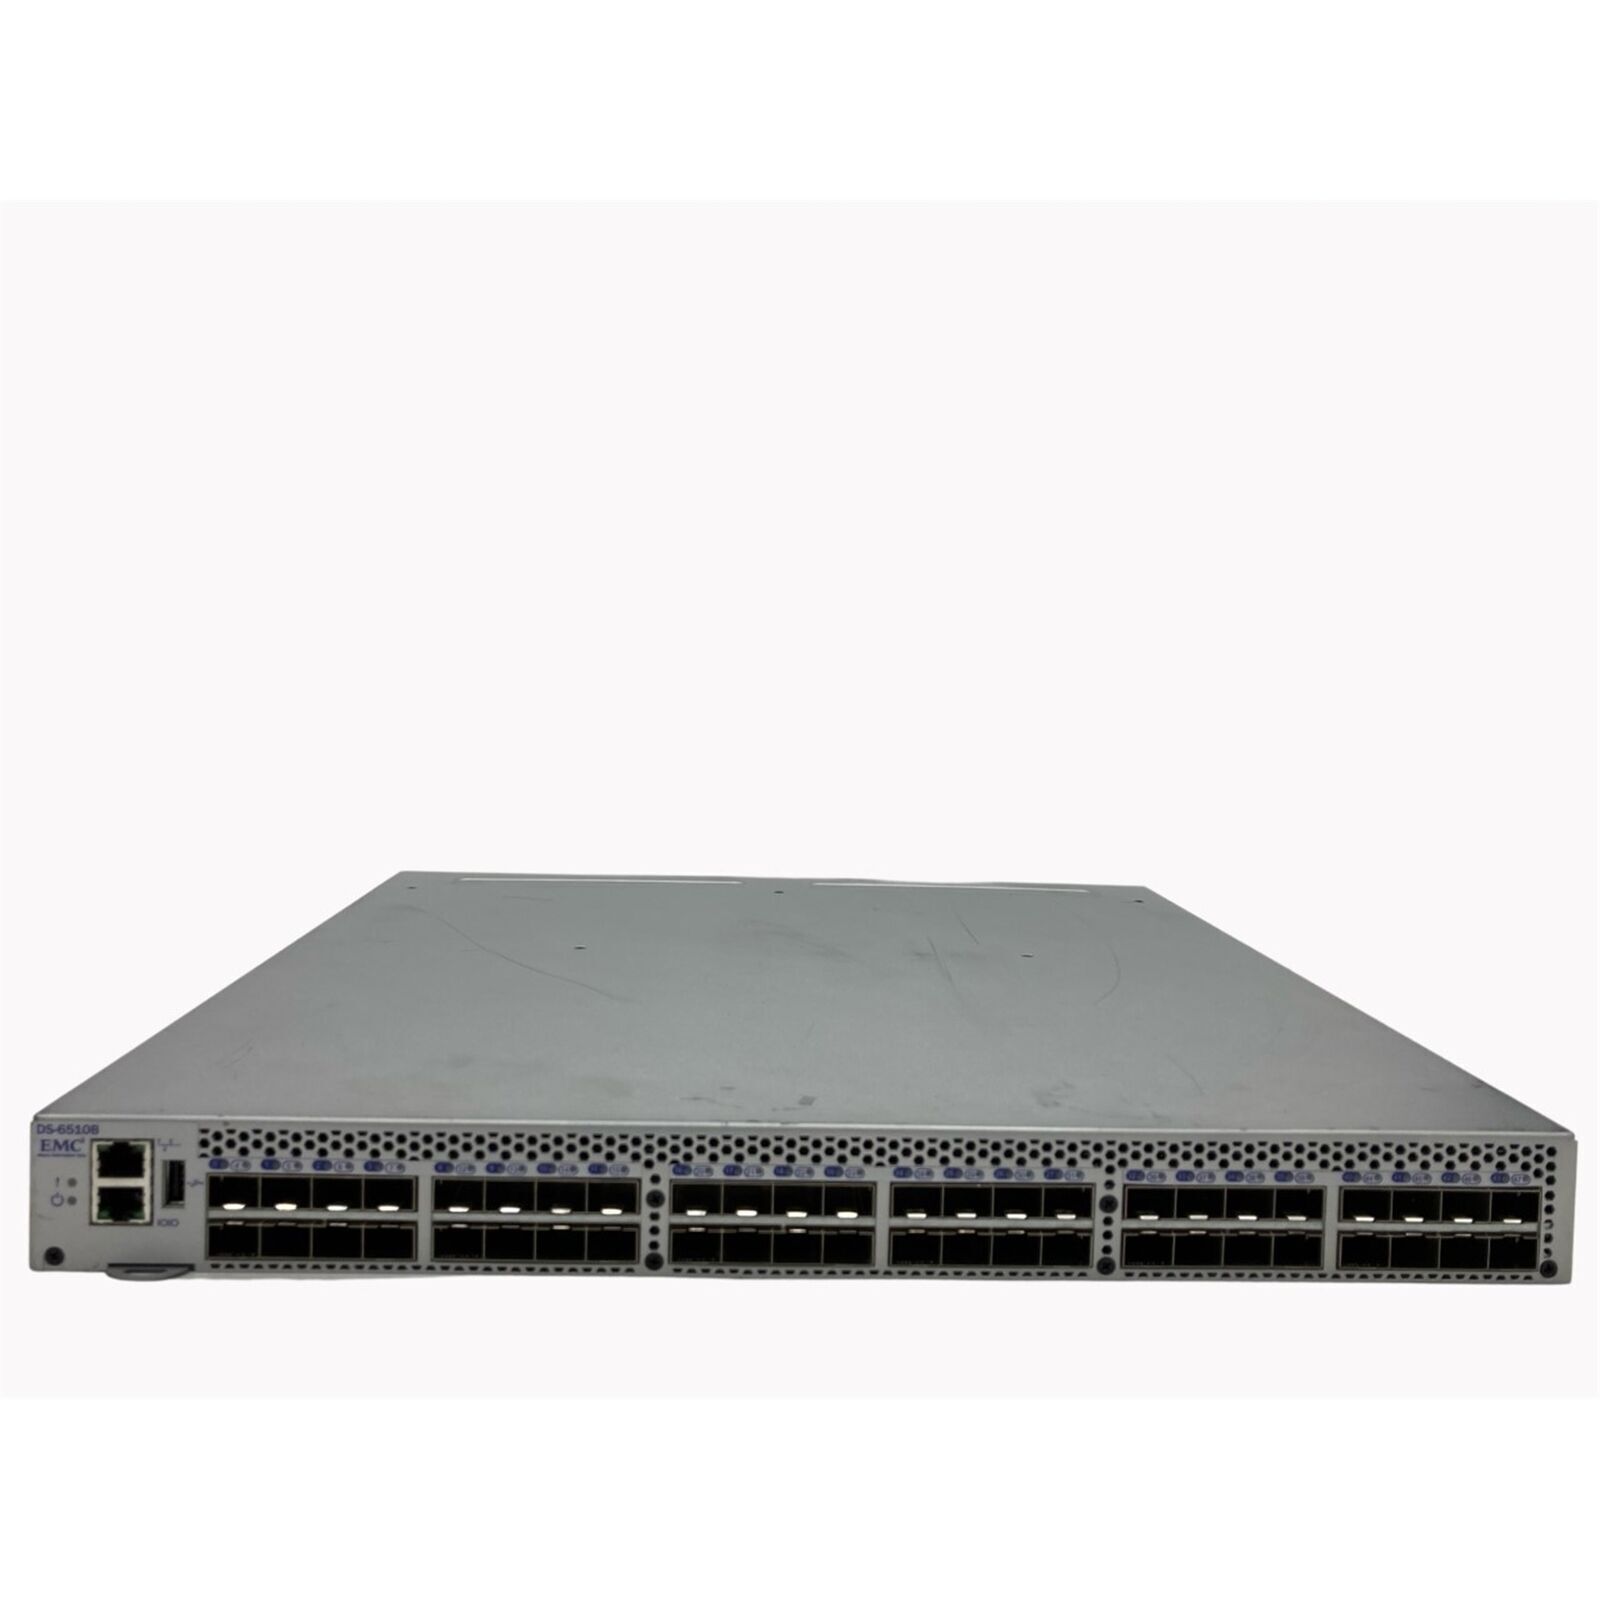 EMC Brocade EM-6510-24-8G-R 24-Port Active Switch